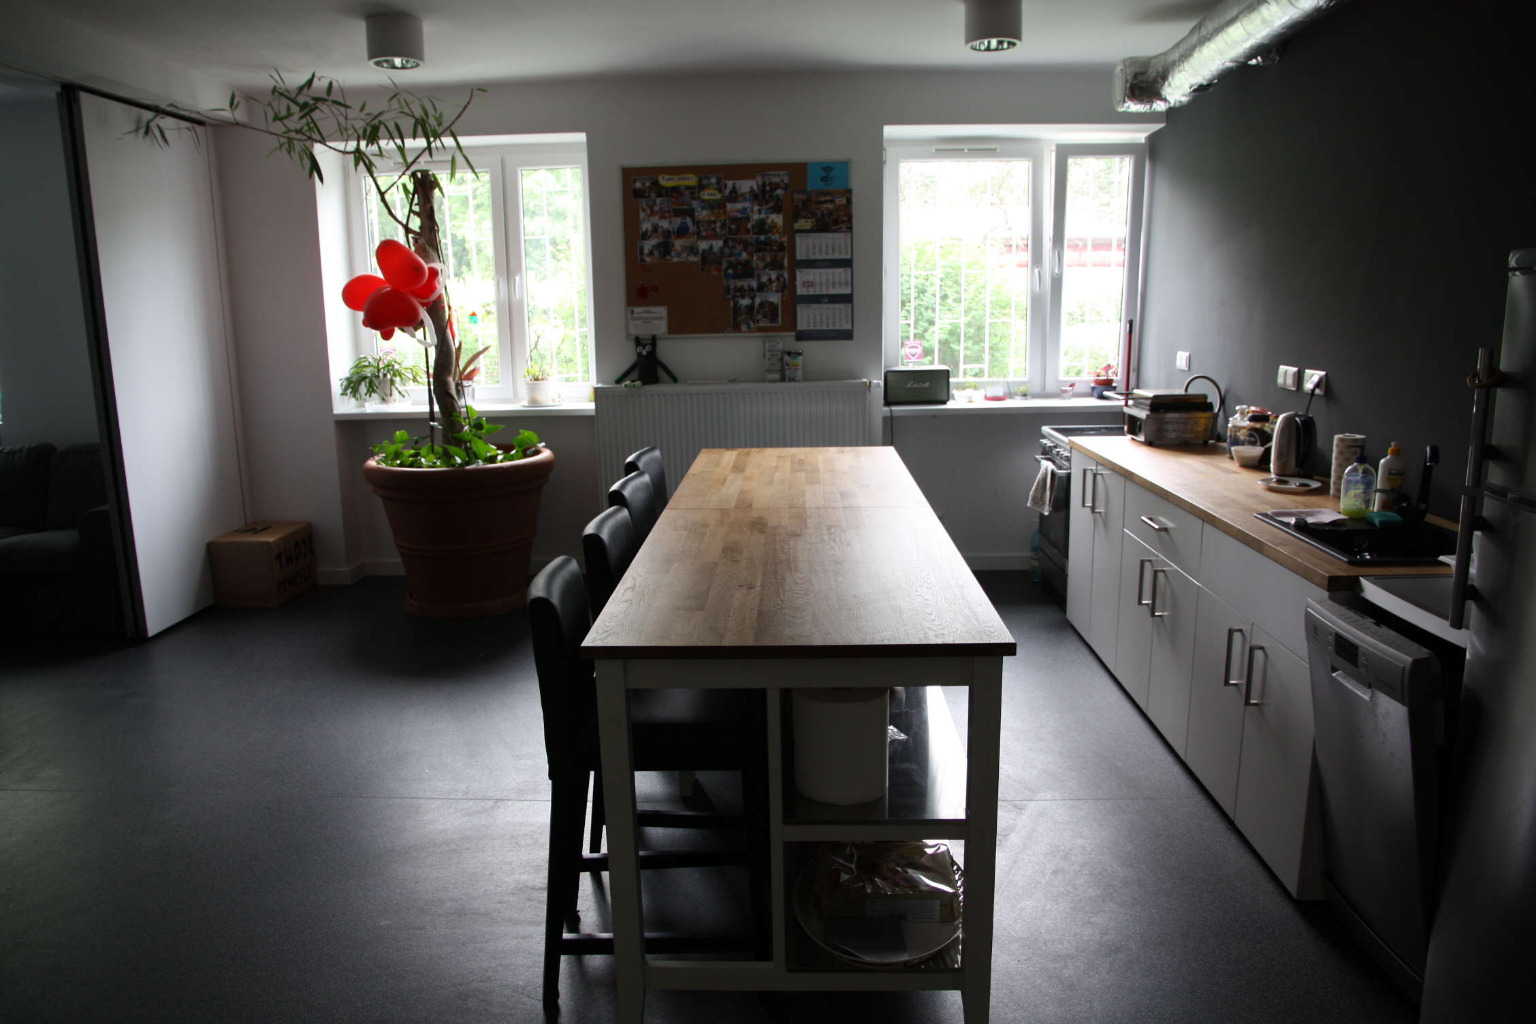 Zdjęcie kuchni z szafkami, miejscami do siedzenia i stołami.